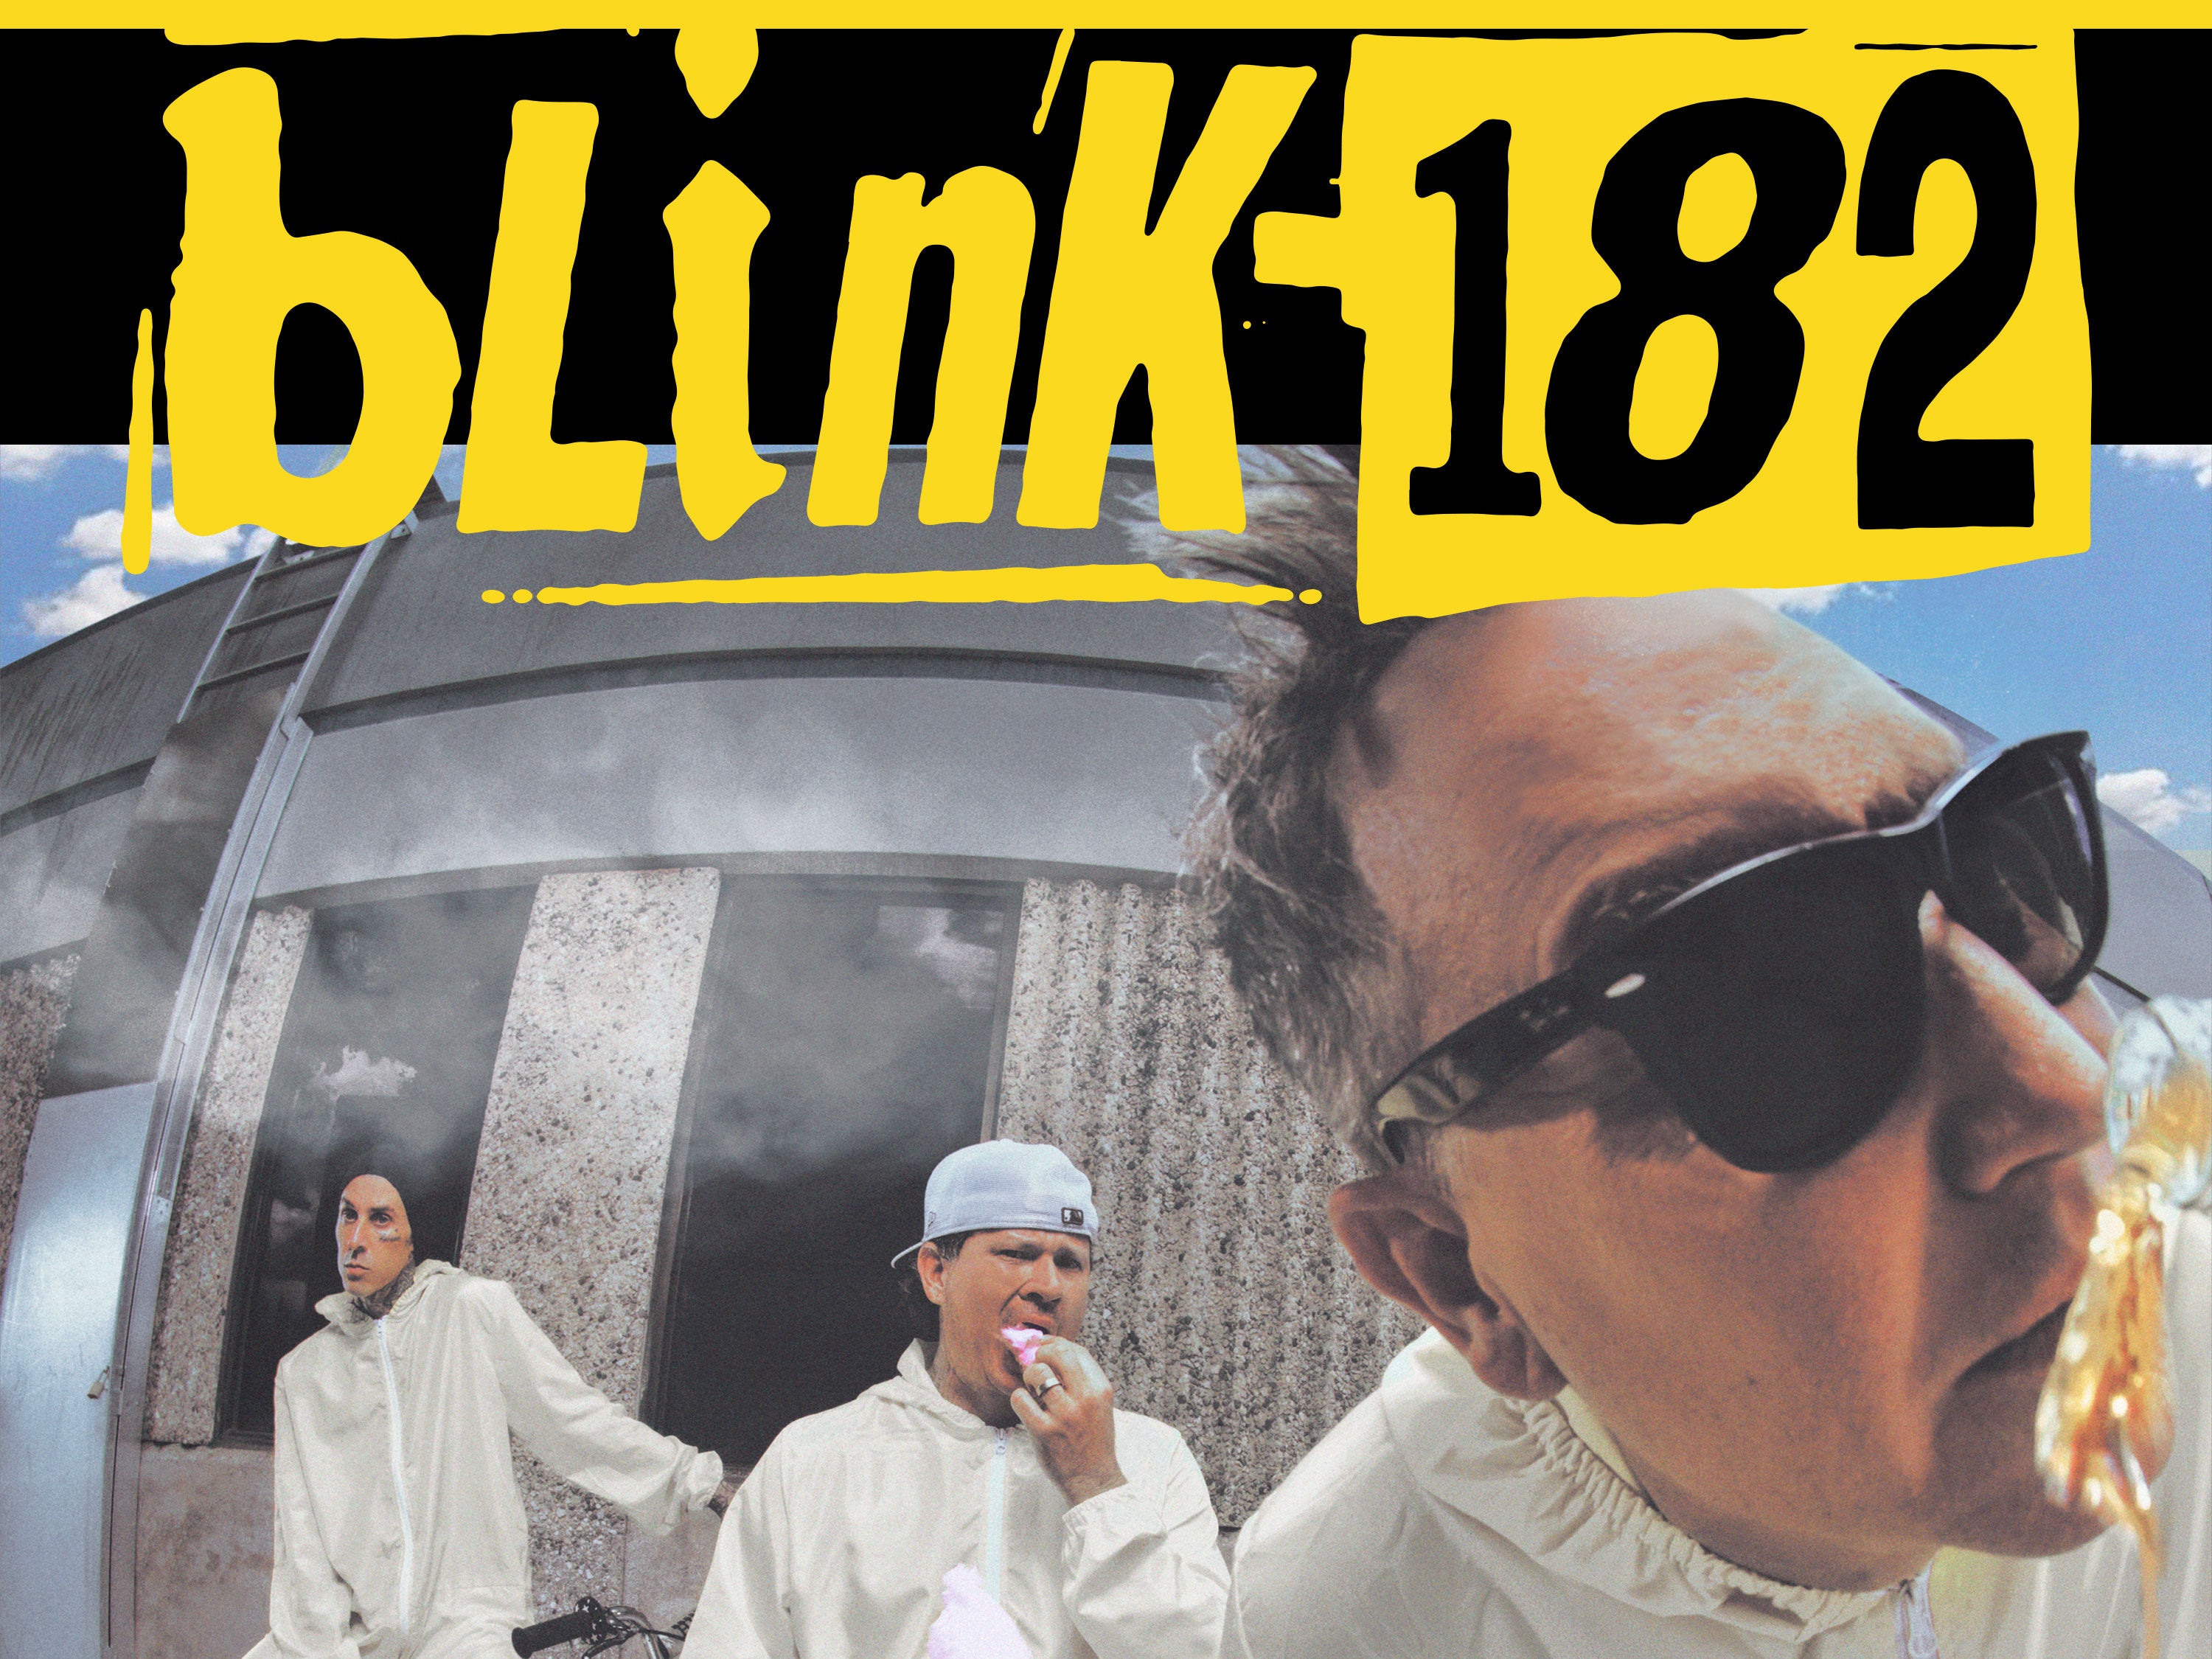 More Info for blink-182